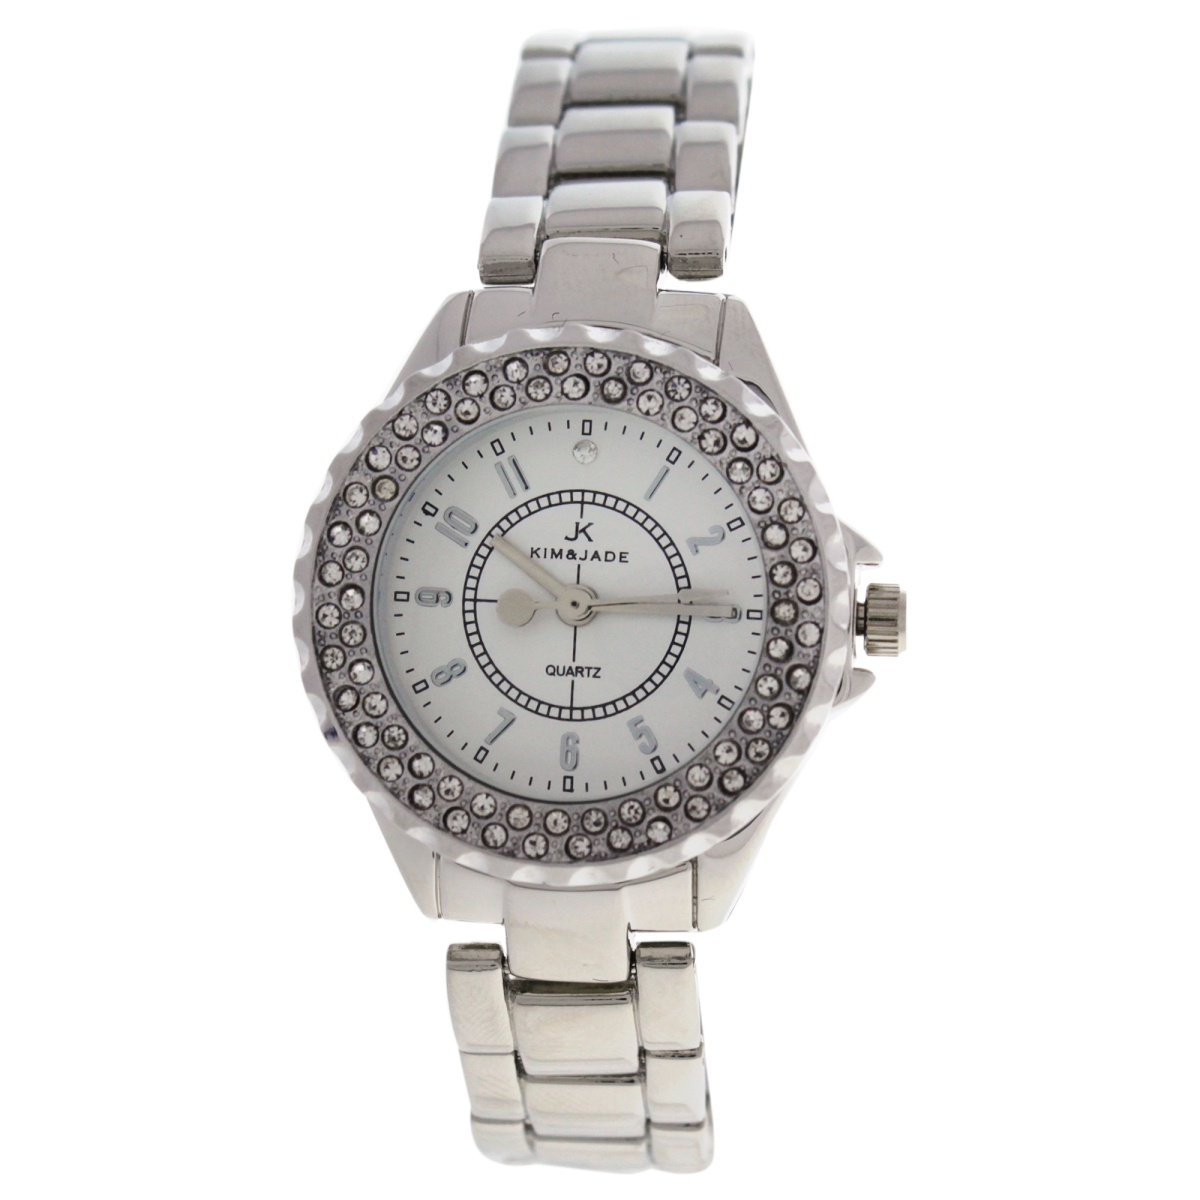 Picture of Kim & Jade W-WAT-1470 Silver Stainless Steel Bracelet Watch for Women - 2033L-SS